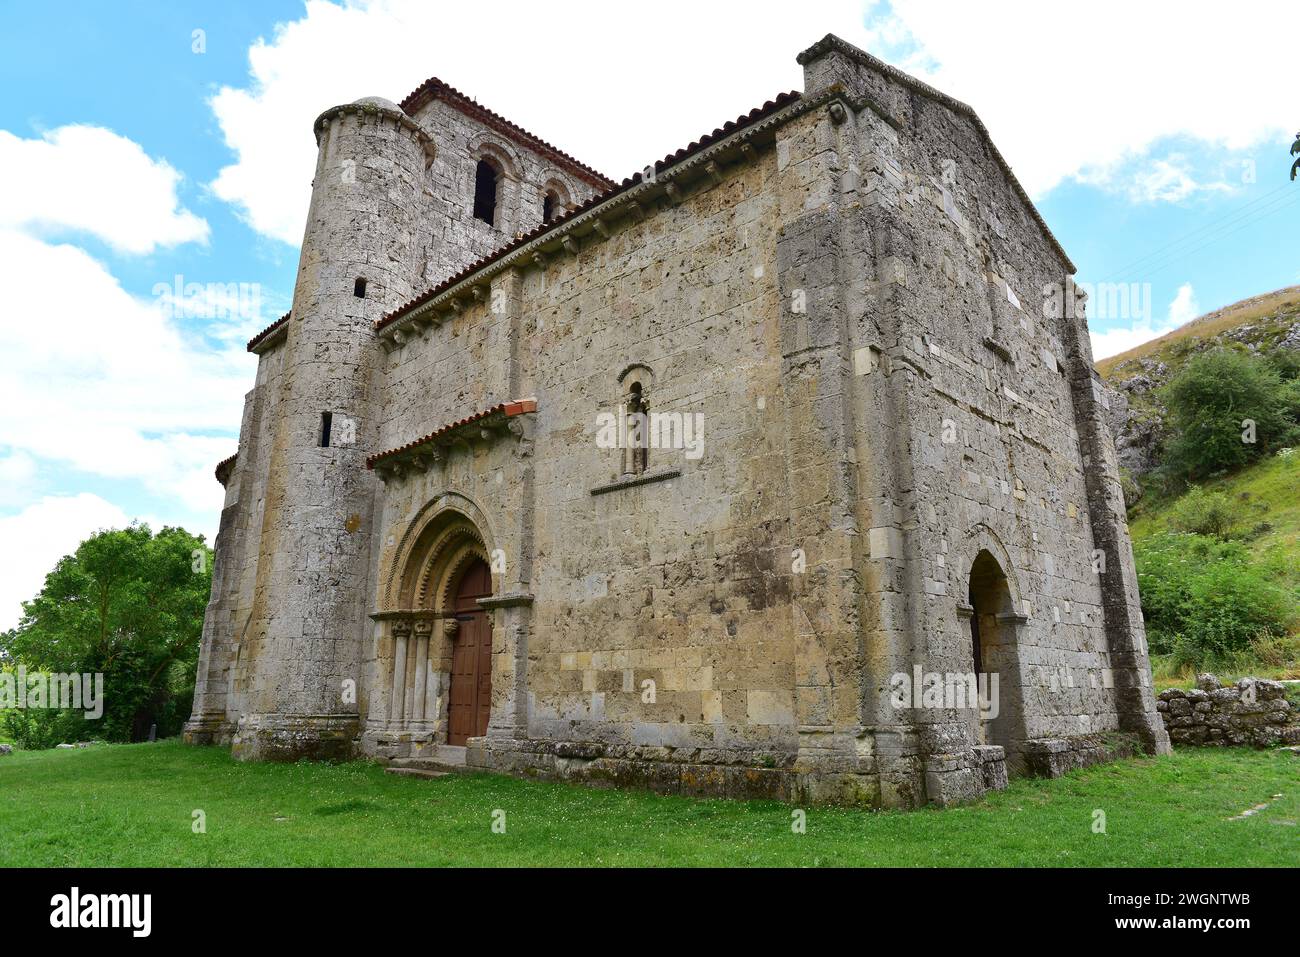 Monasterio de Rodilla, Nuestra Señora del Valle hermitage (romanesque 12th century). La Bureba, Burgos province, Castilla y Leon, Spain. Stock Photo